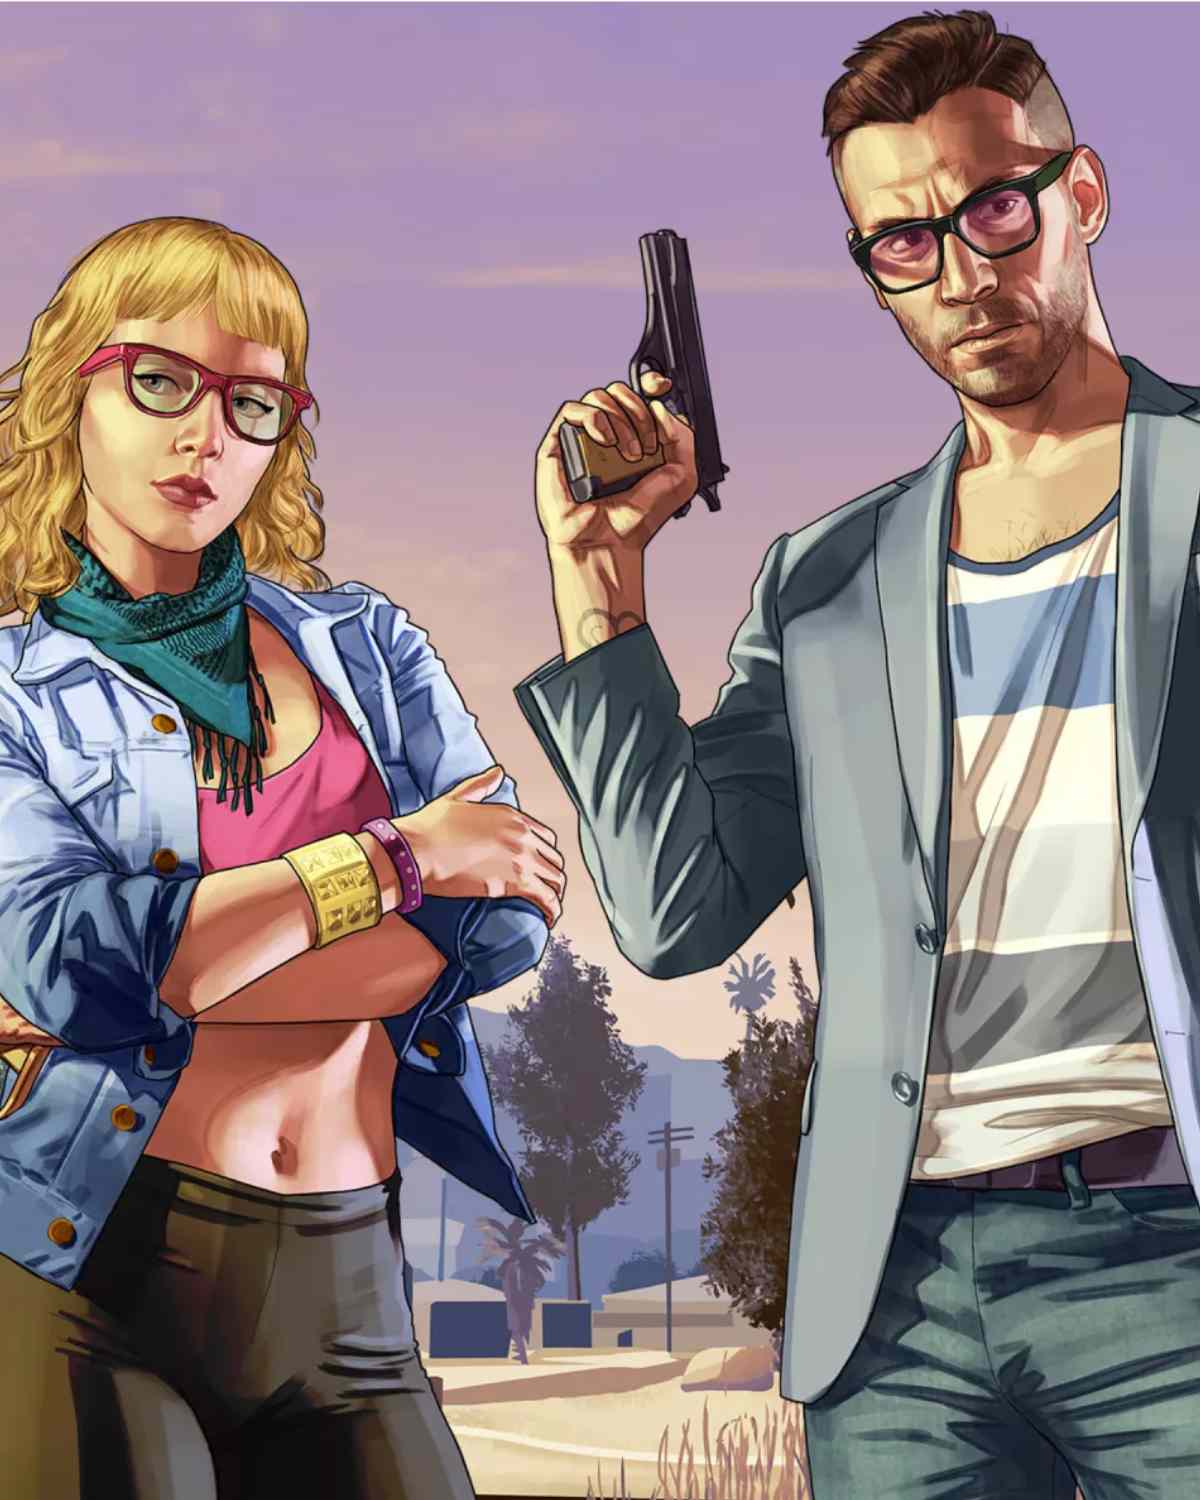 Größtes Leak der Videospielgeschichte? Grand Theft Auto VI nach Hack geleakt